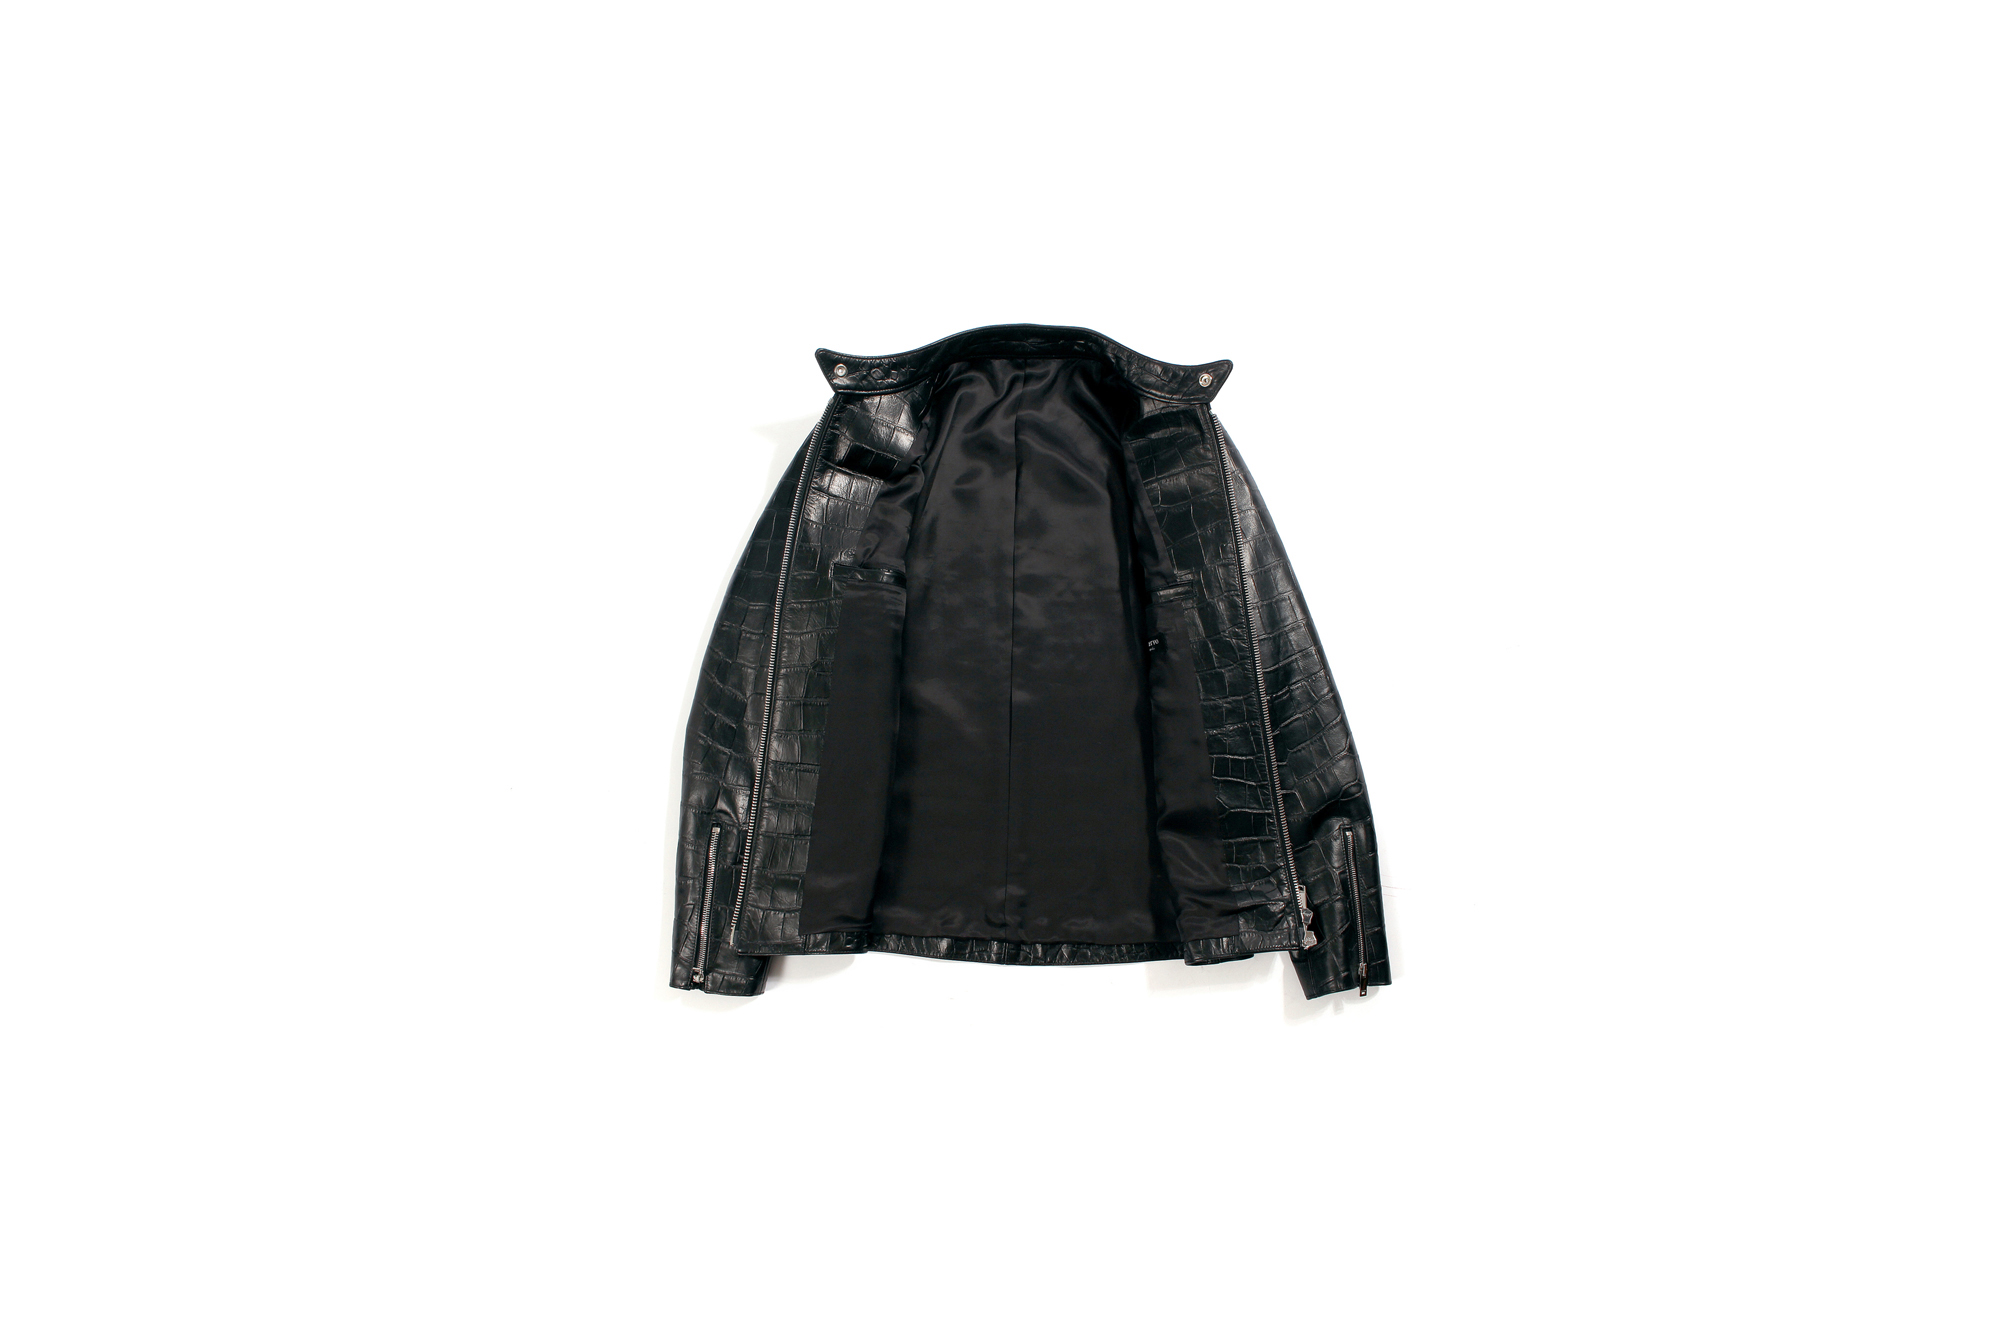 cuervo bopoha (クエルボ ヴァローナ) Satisfaction Leather Collection (サティスファクション レザー コレクション) RICHARD (リチャード) EMBOSSED CROCODILE LEATHER (エンボスクロコダイルレザー) シングル ライダース ジャケット BLACK (ブラック) MADE IN JAPAN (日本製) 2022 【Special Model】【ご予約開始】 愛知 名古屋 Alto e Diritto altoediritto アルトエデリット